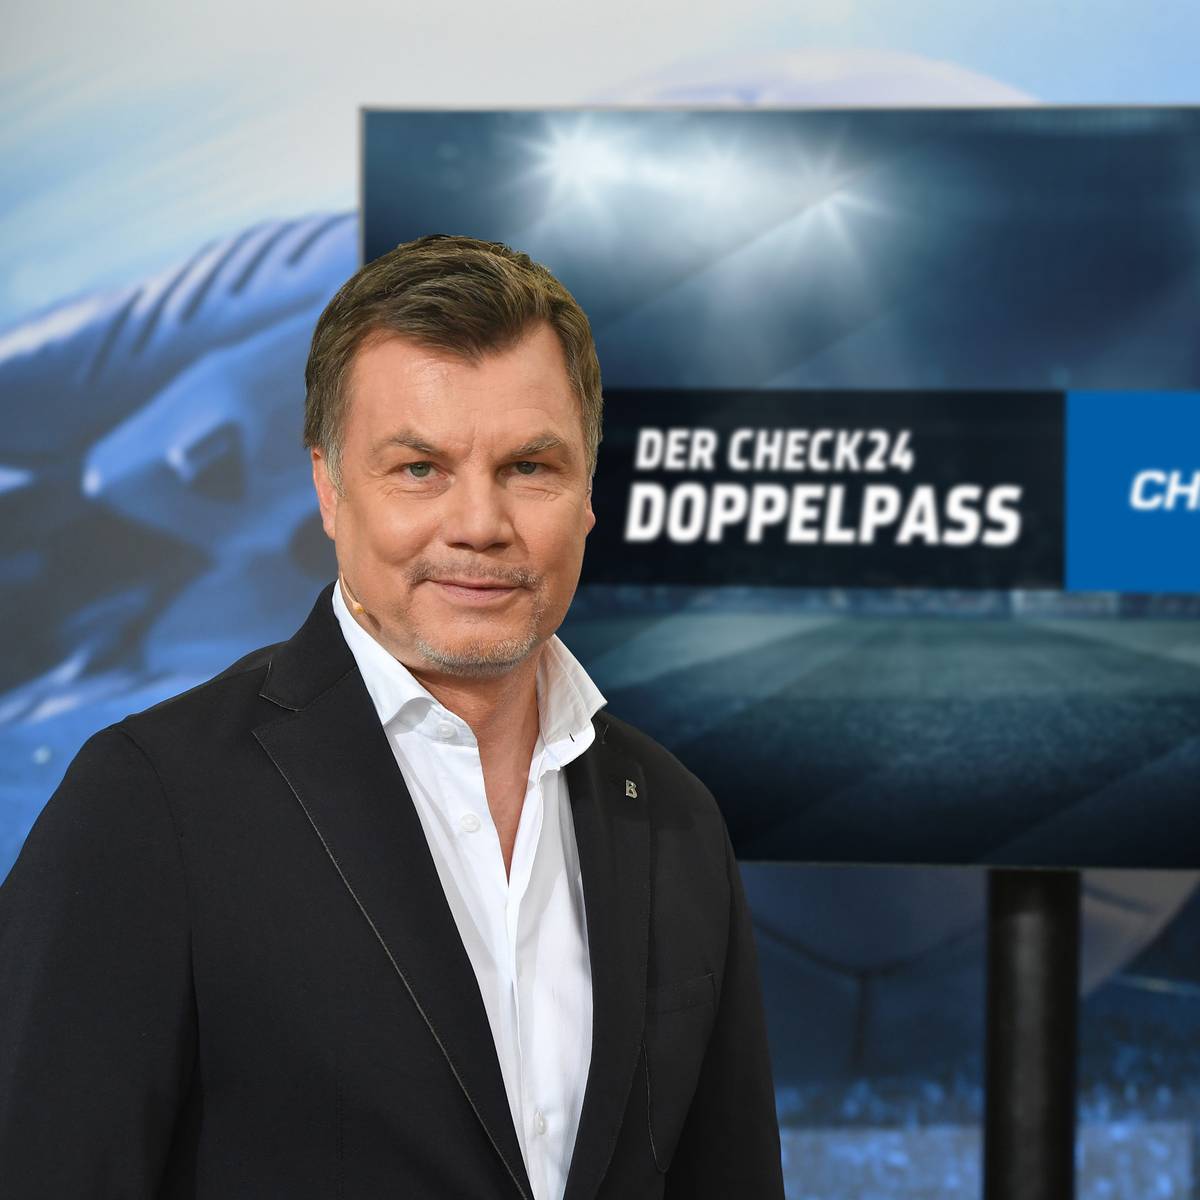 Der CHECK24 Doppelpass“ mit starker Reichweite nach Fan-Skandal 1,19 Millionen Zuschauer im Schnitt sehen Deutschlands beliebtesten Fußballtalk